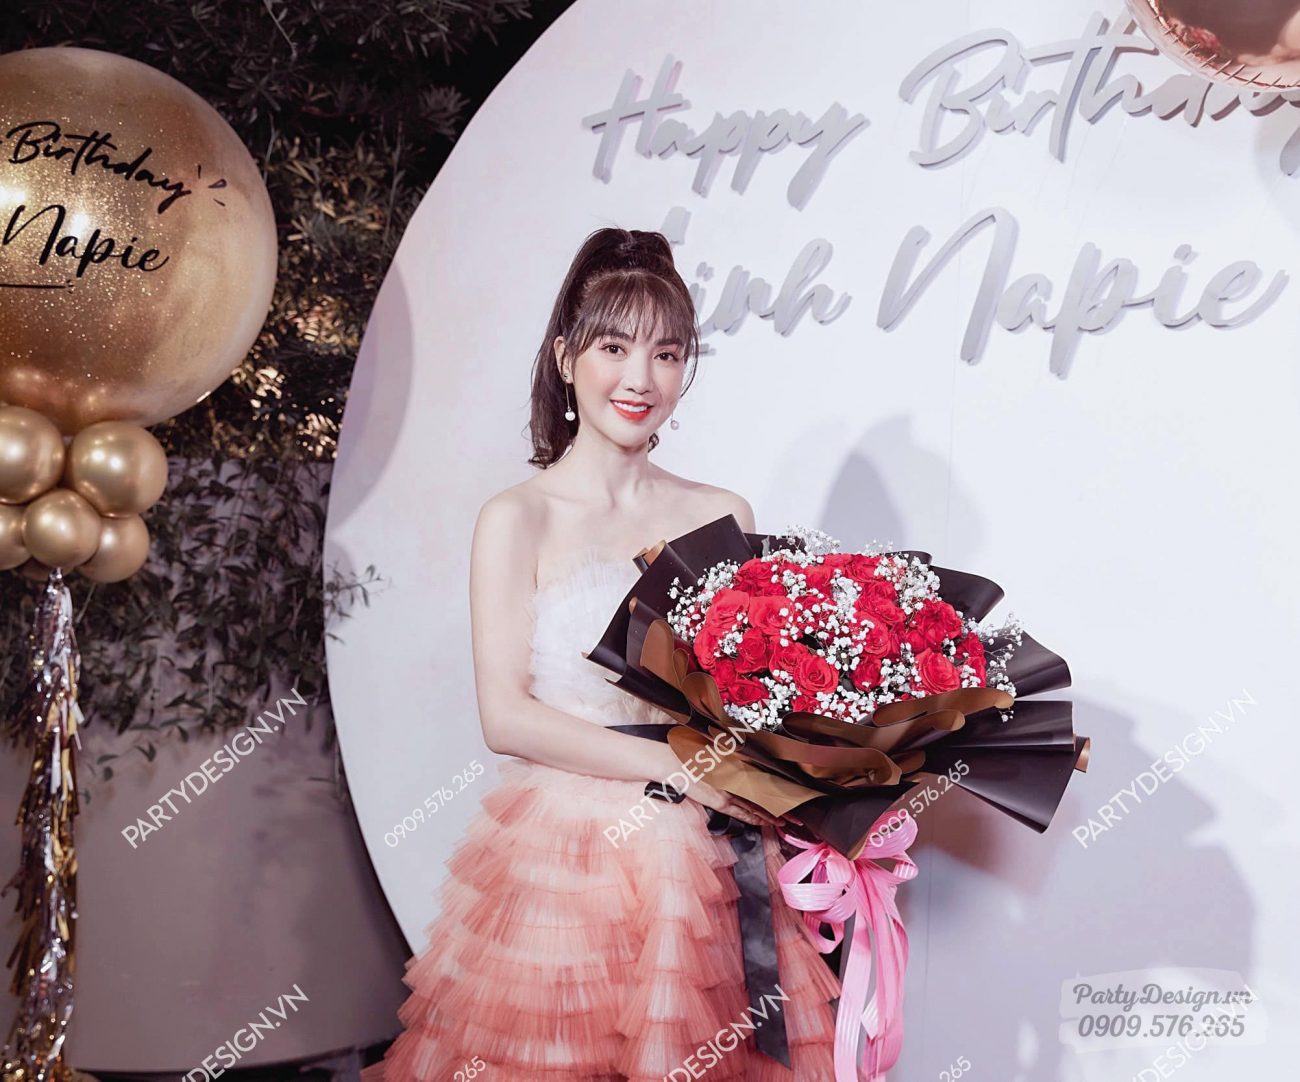 Trang trí sinh nhật hot girl Linh Napie